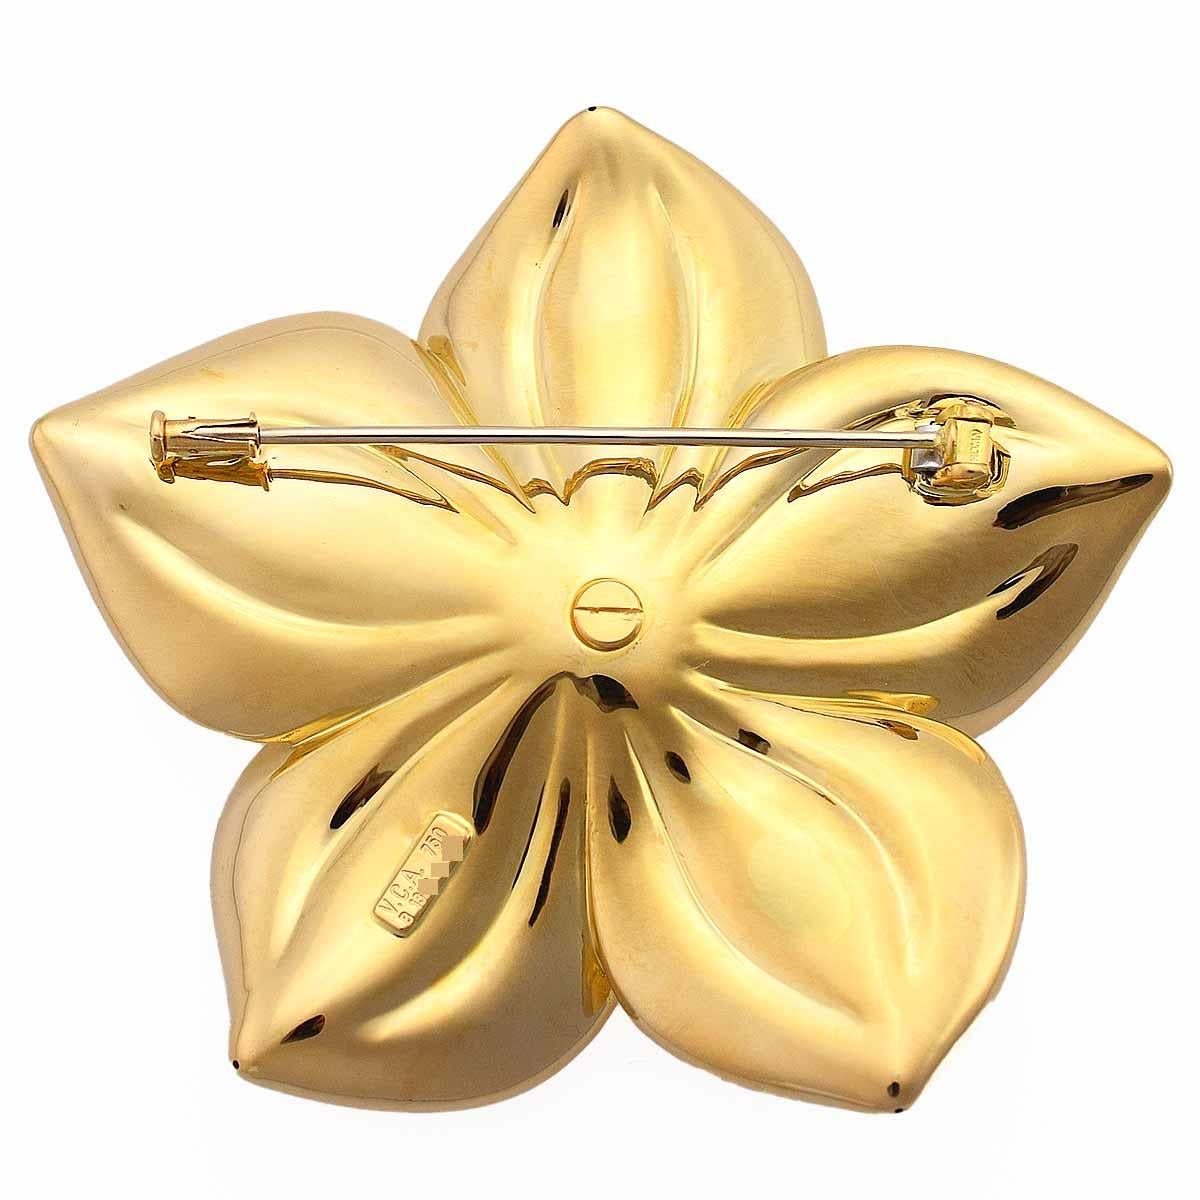 Round Cut Van Cleef & Arpels Vintage Diamond Flower Brooch 18 Karat Yellow and White Gold